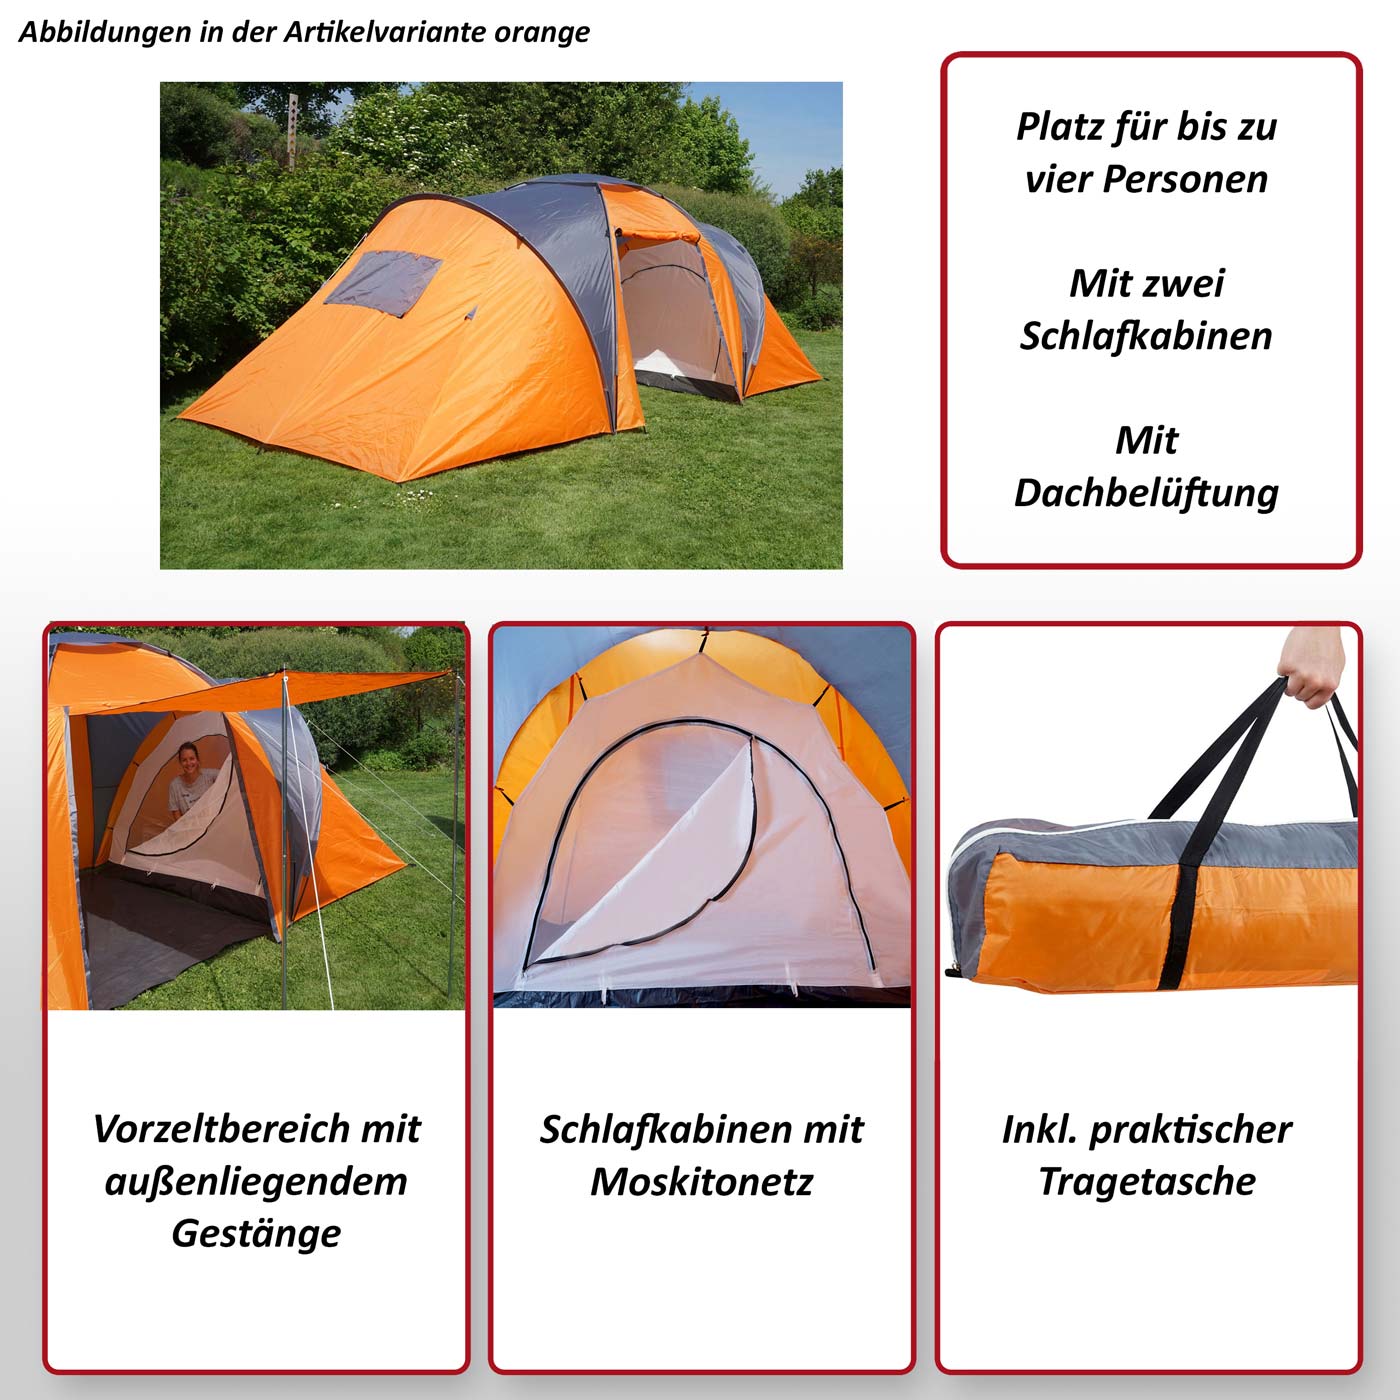 Campingzelt Loksa, 4-Mann Zelt Kuppelzelt Igluzelt Festival-Zelt, 4 Personen  ~ rot von Heute-Wohnen